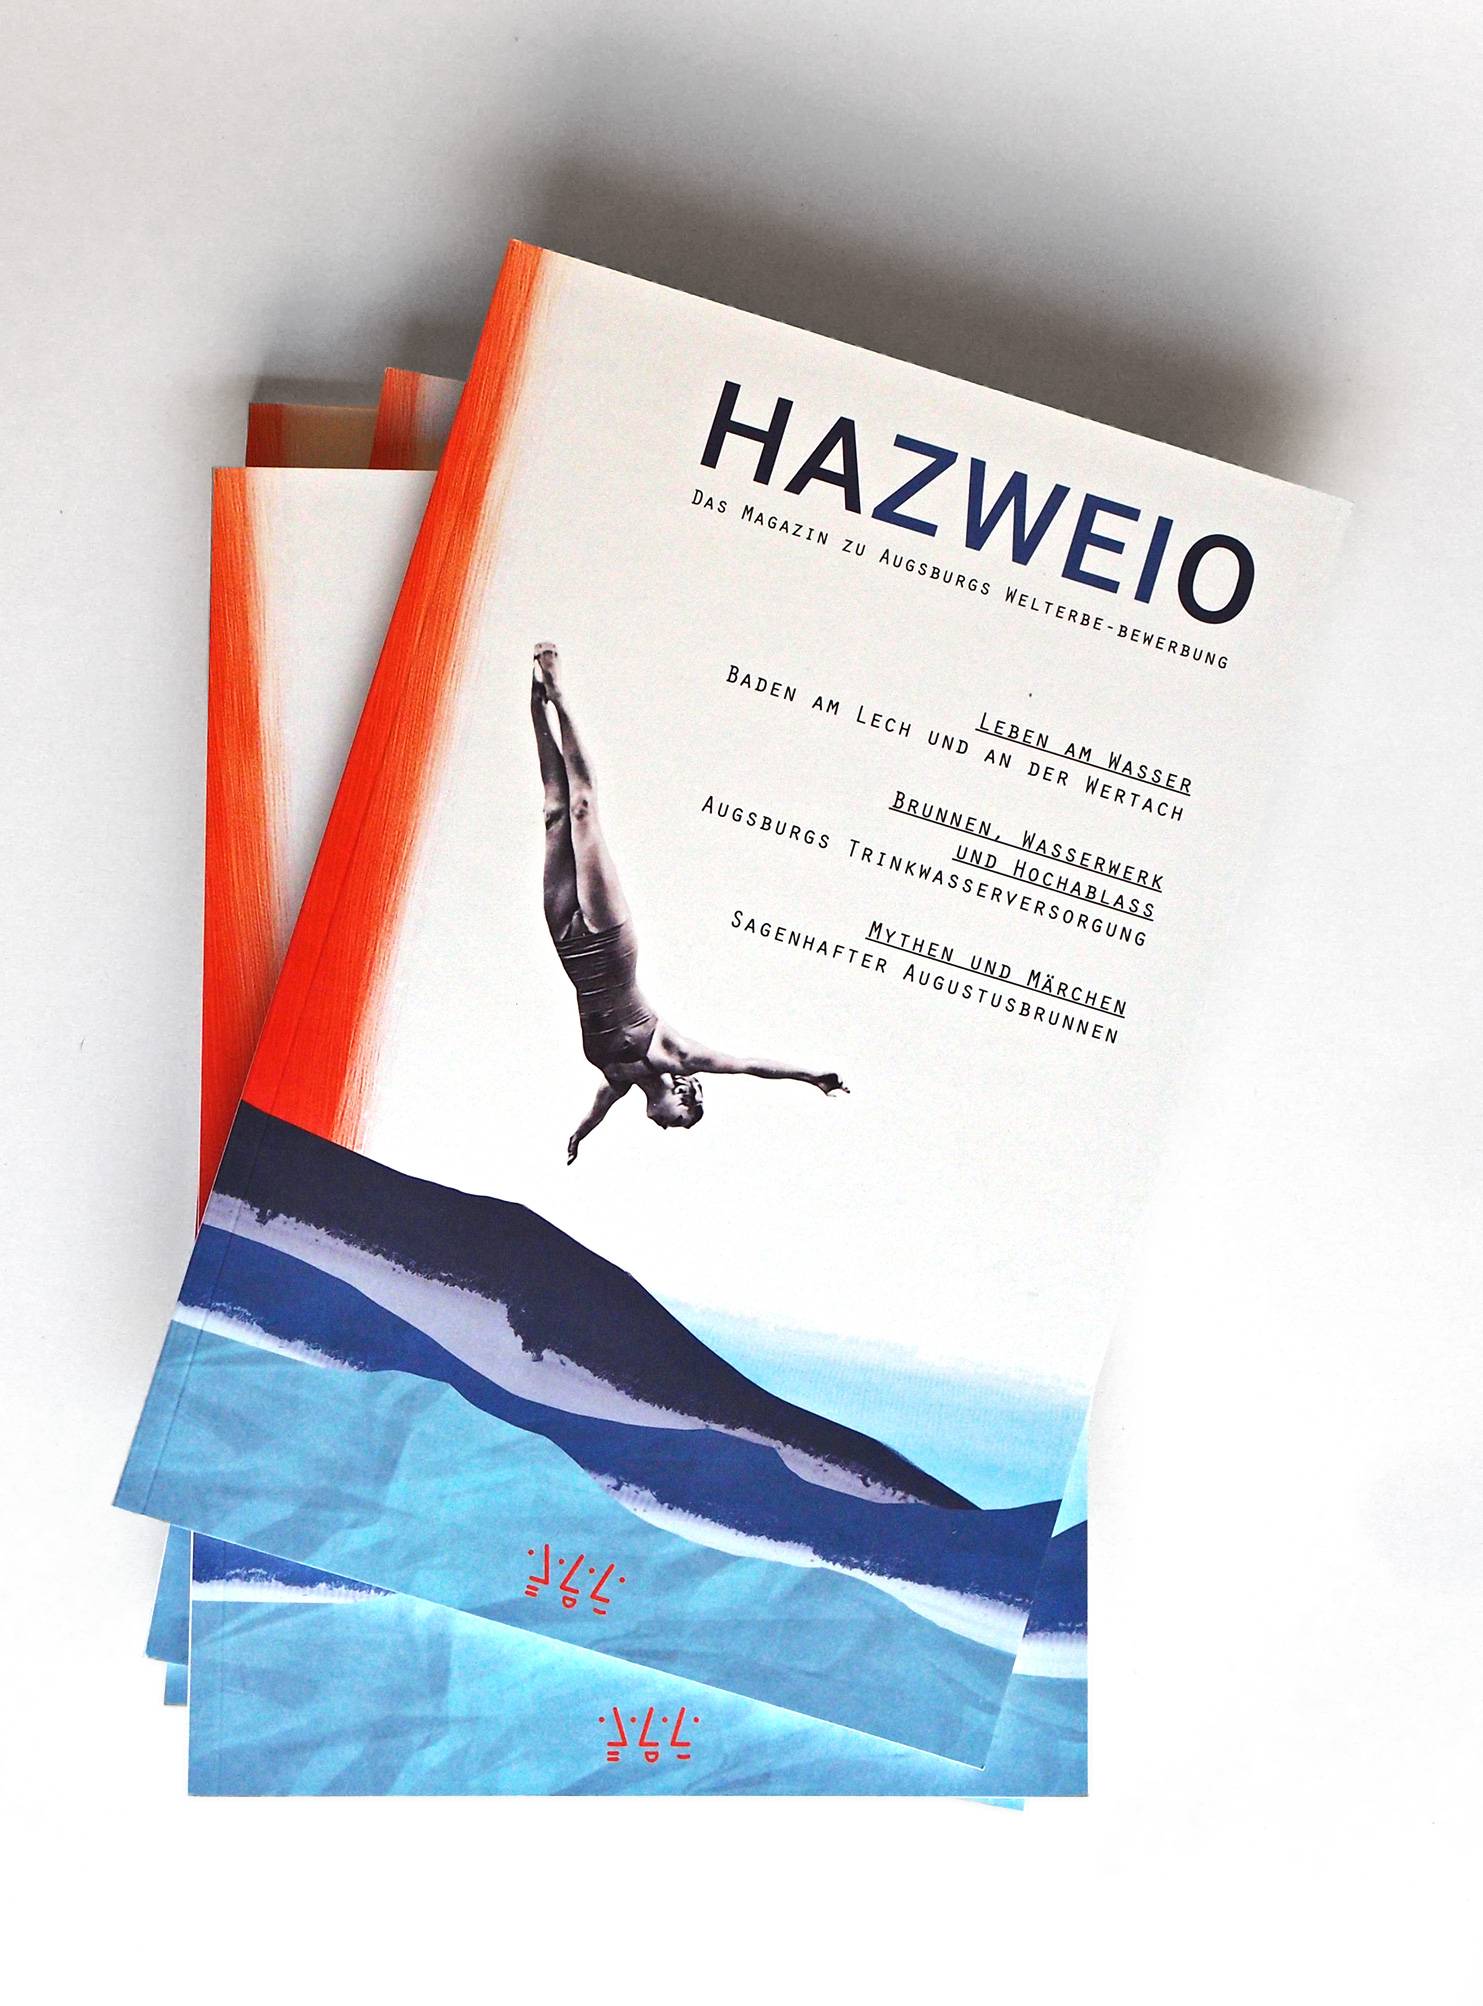 HAZWEIO-Magazin: Spannende Geschichten - ansprechend aufbereitet. Studierende der Hochschule Augsburg konzipierten das Magazin im Designprojekt Editorial-Design.